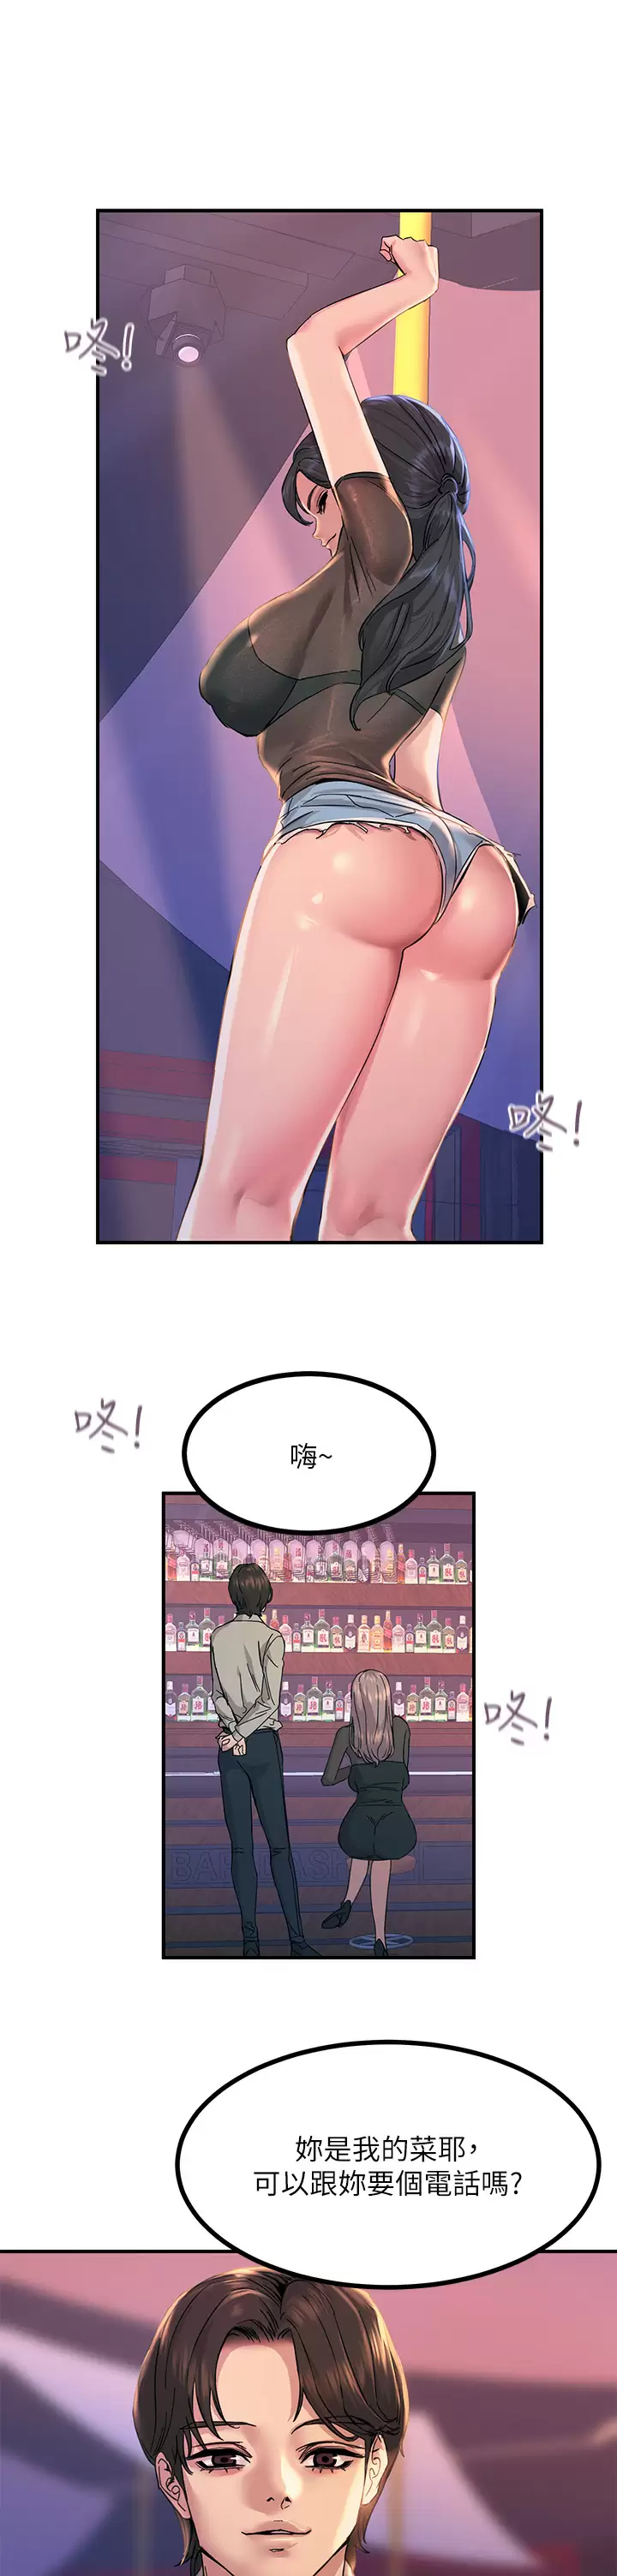 韩国污漫画 觸電大師 第11话 确认好友的兴奋指数 36